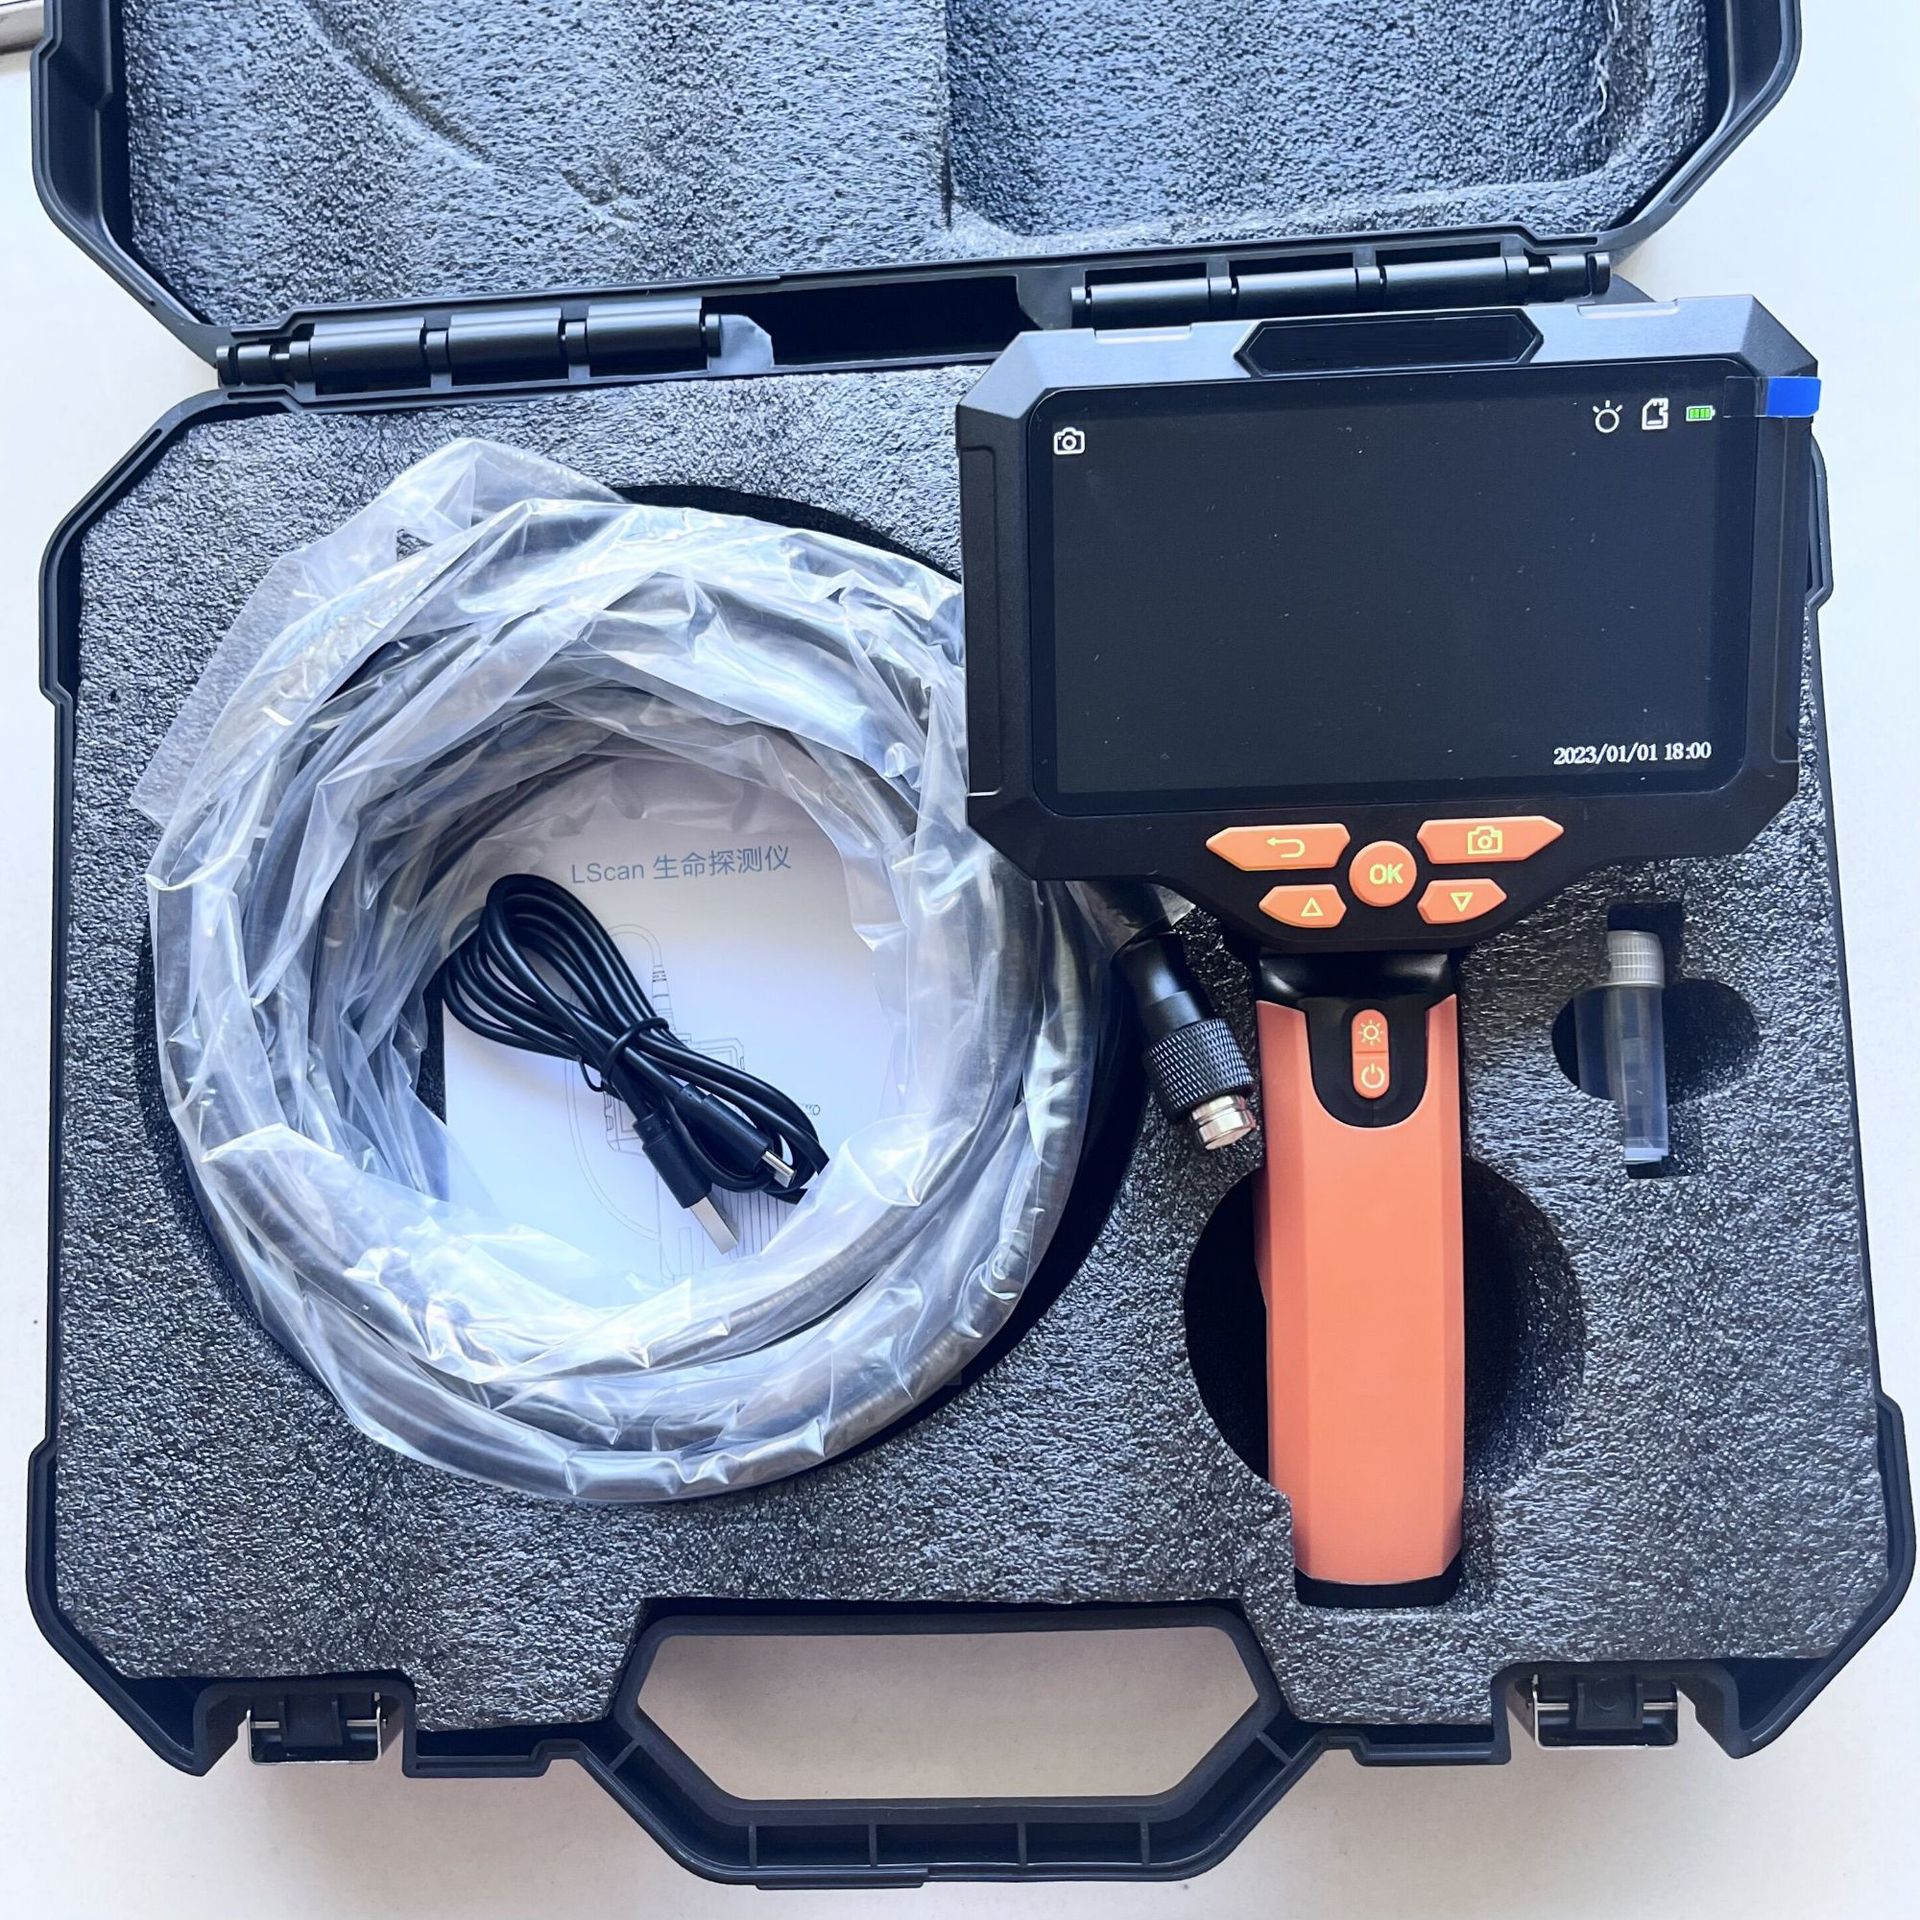 LScan-V5红外生命探测仪 光学生命探测仪5米夜视蛇眼视频搜救仪器